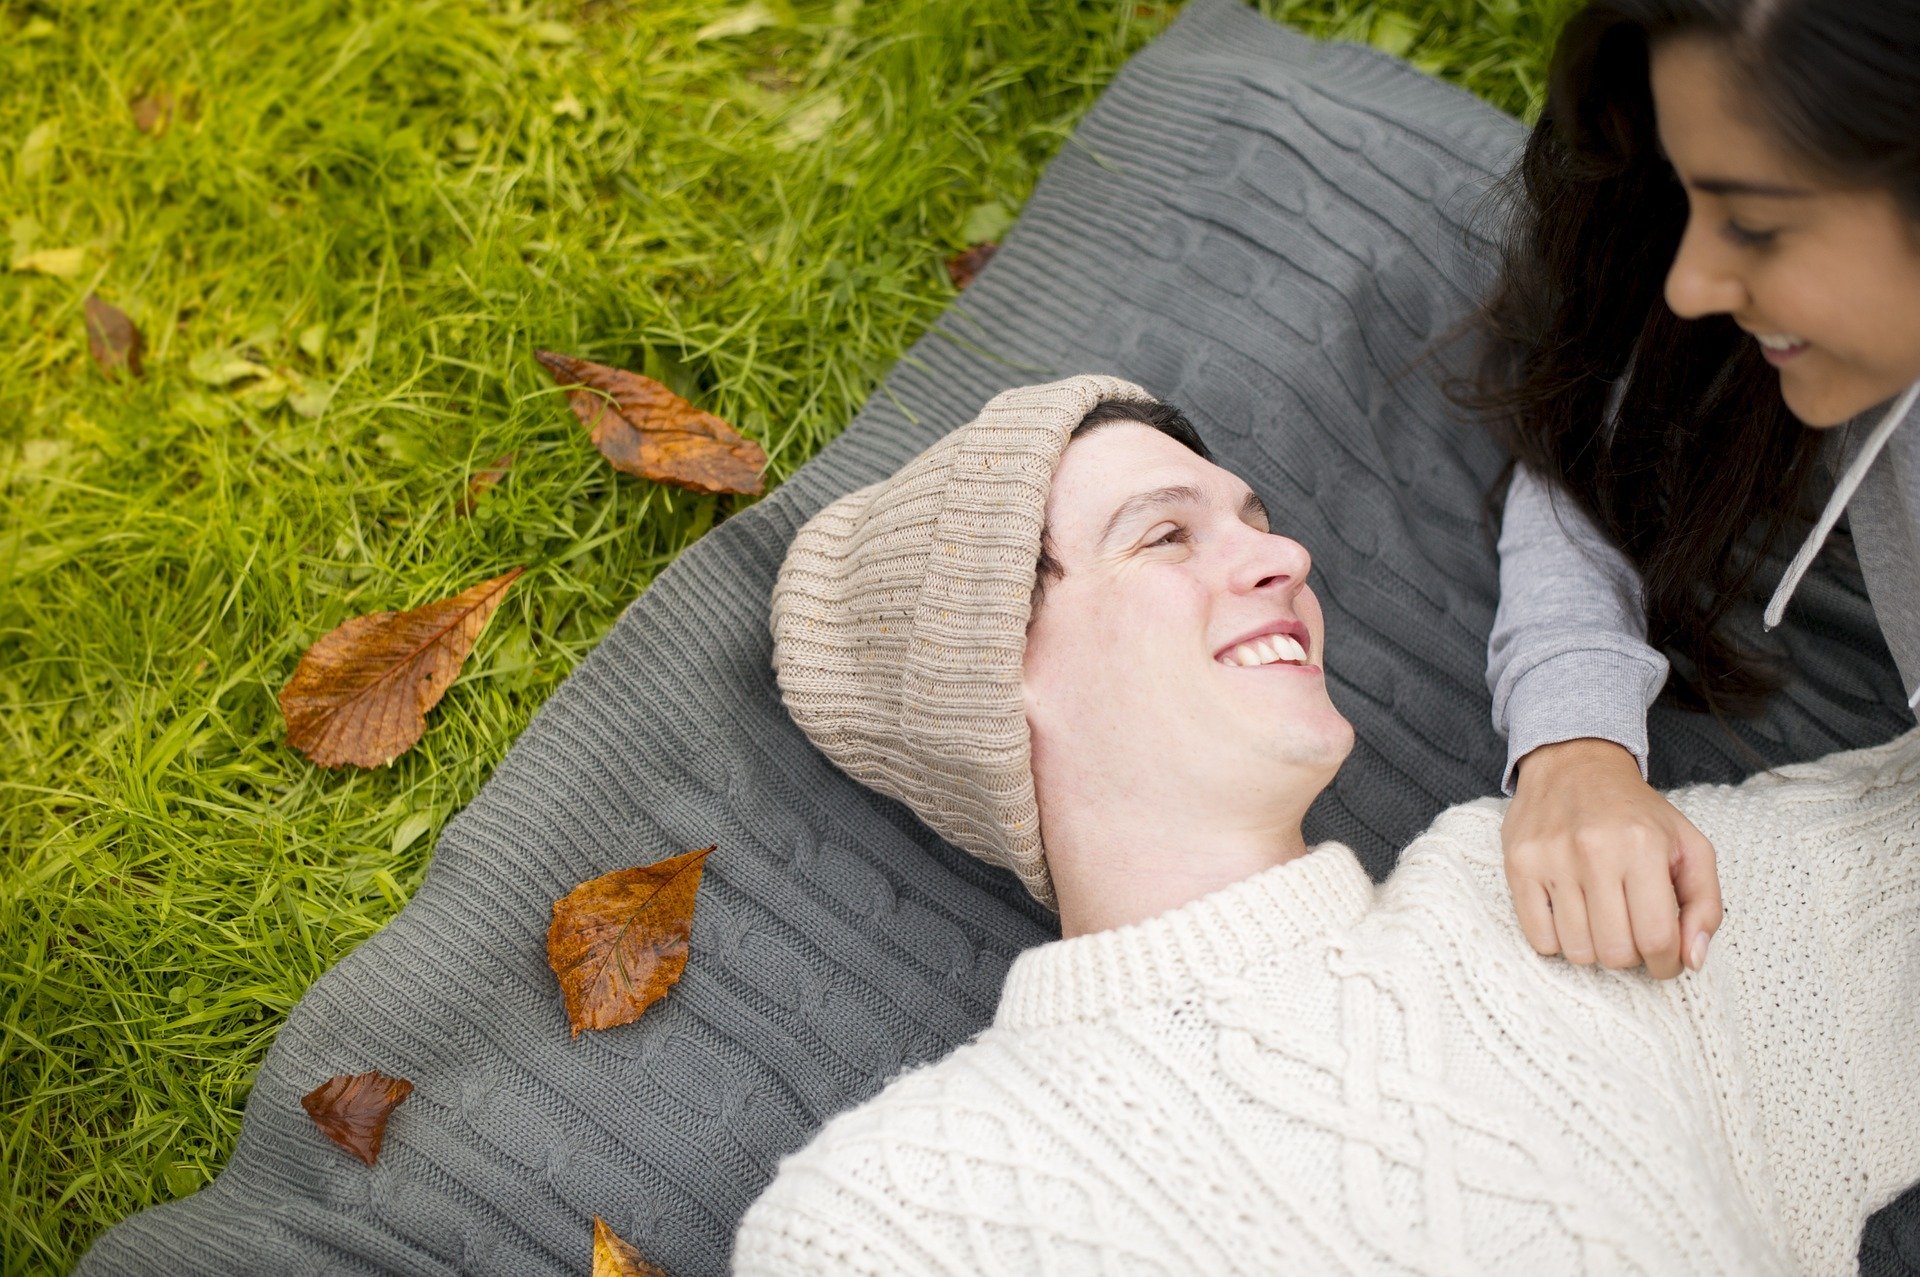 Homem deitado em cobertor sobre gramado, sorrindo, com mulher olhando para ele sorrindo